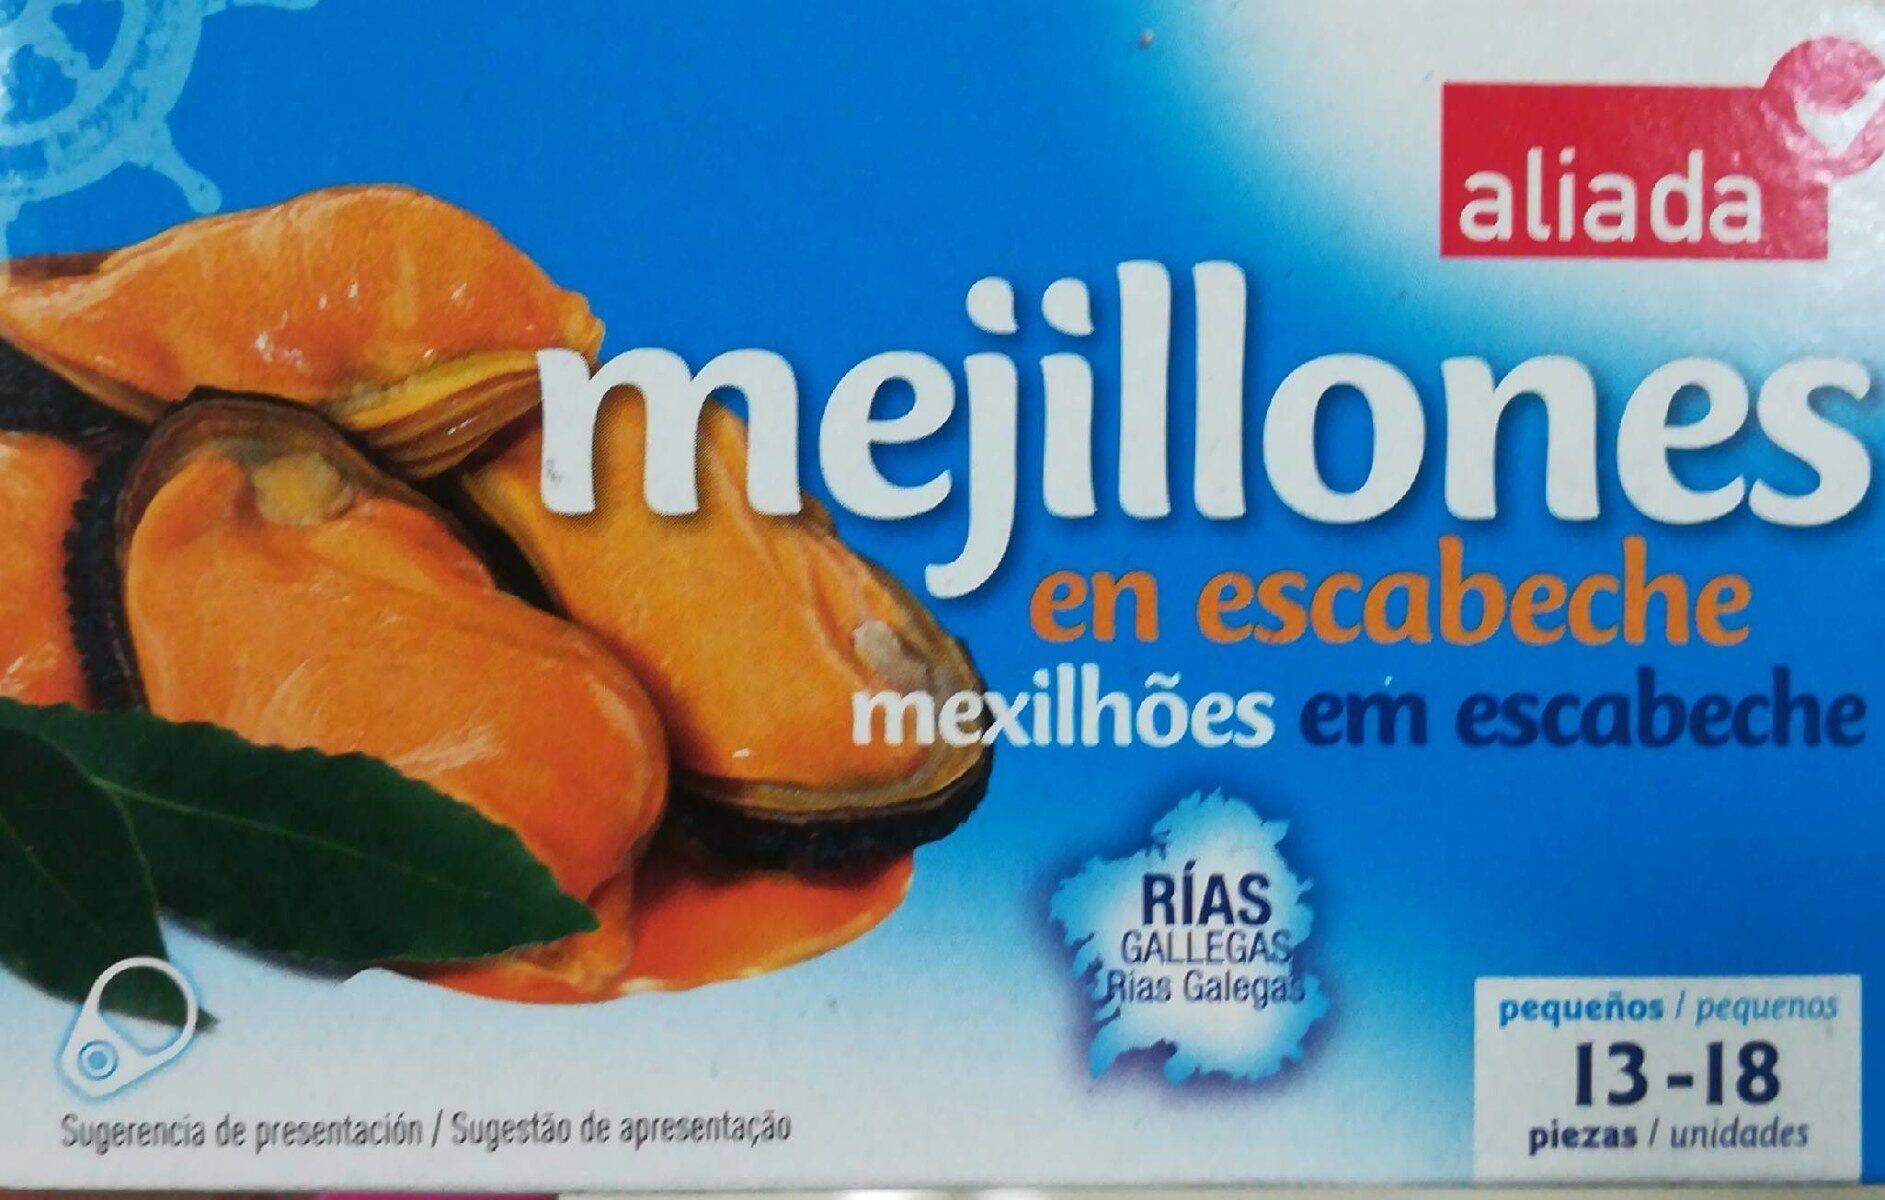 Mejillones de las rías gallegas en escabeche sin gluten 13-18 lata 69 g - Producte - es